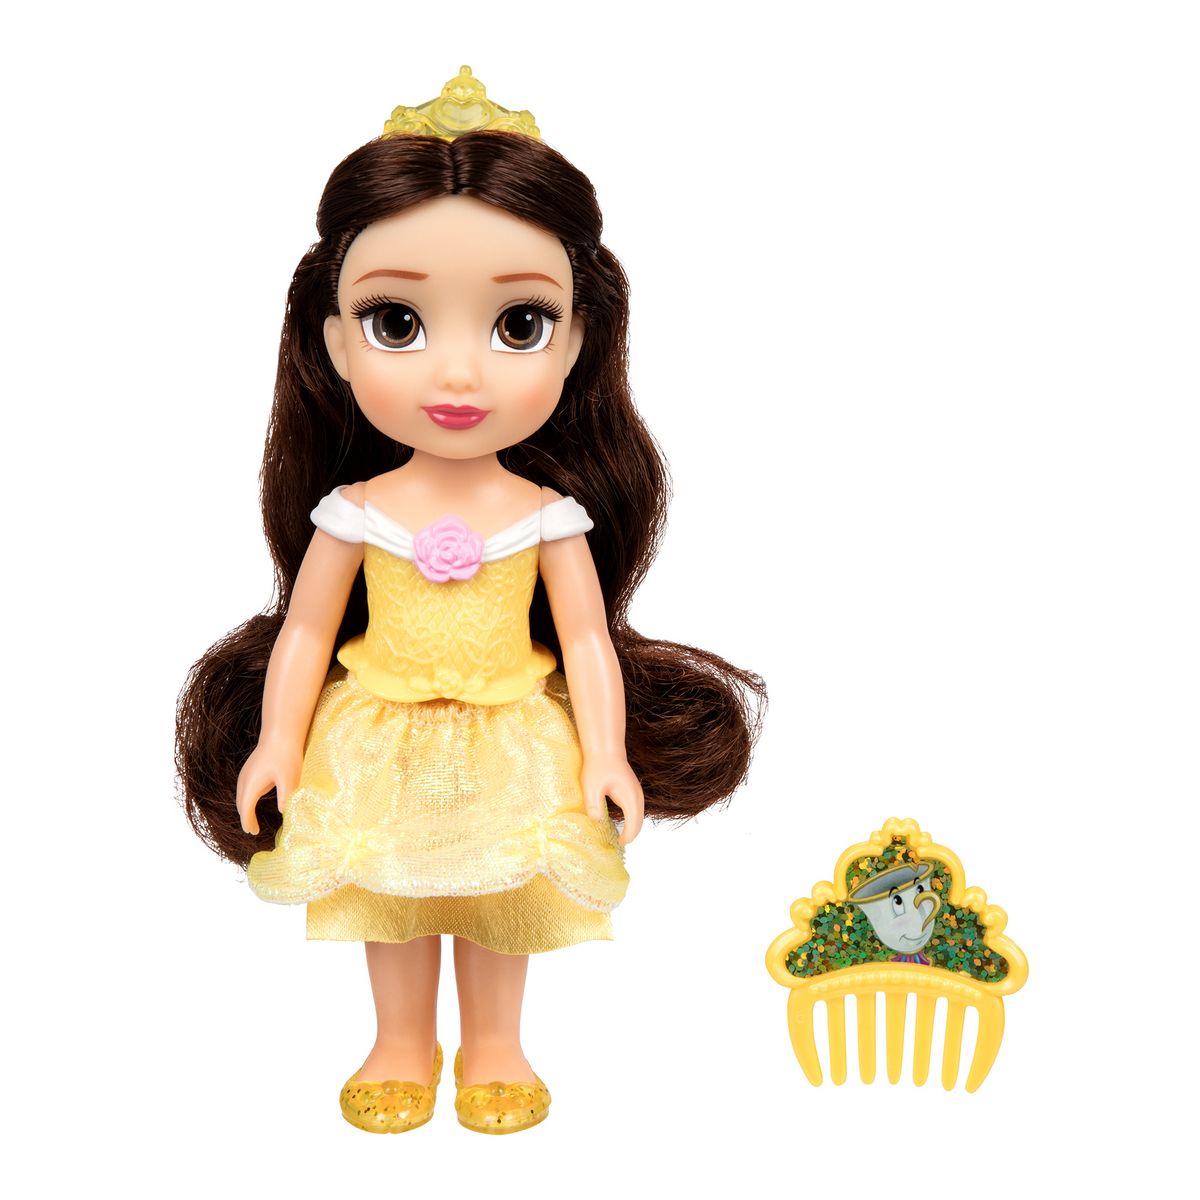 JAKKS PACIFIC Poupée Disney Princess Belle - 15 cm